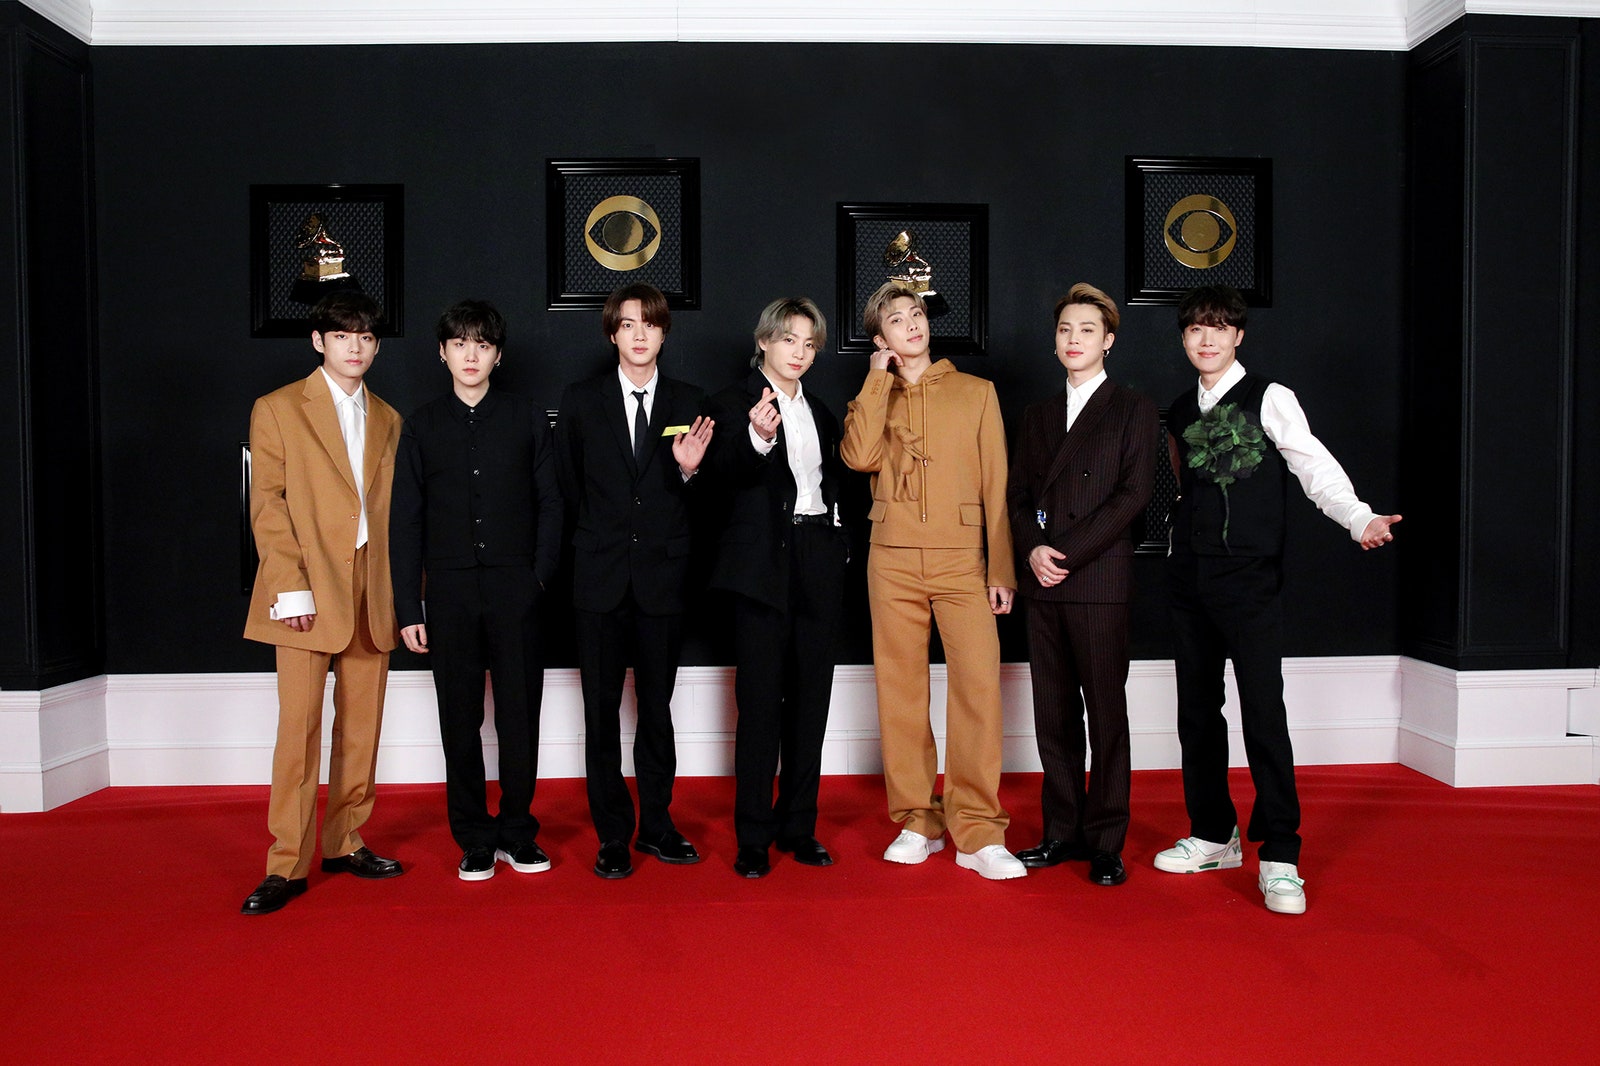 BTS là nhóm nhạc Hàn Quốc duy nhất bước lên thảm đỏ Grammy. Cả nhóm diện những set đồ đến từ nhà mốt Louis Vuitton. Trong khi các thành viên khác chọn suit chỉn chu thì trưởng nhóm RM lại một mình một cửa diện Hoodie. Có lẽ sau khi thay stylist, quần áo của BTS đã vừa vặn hơn nhiều.